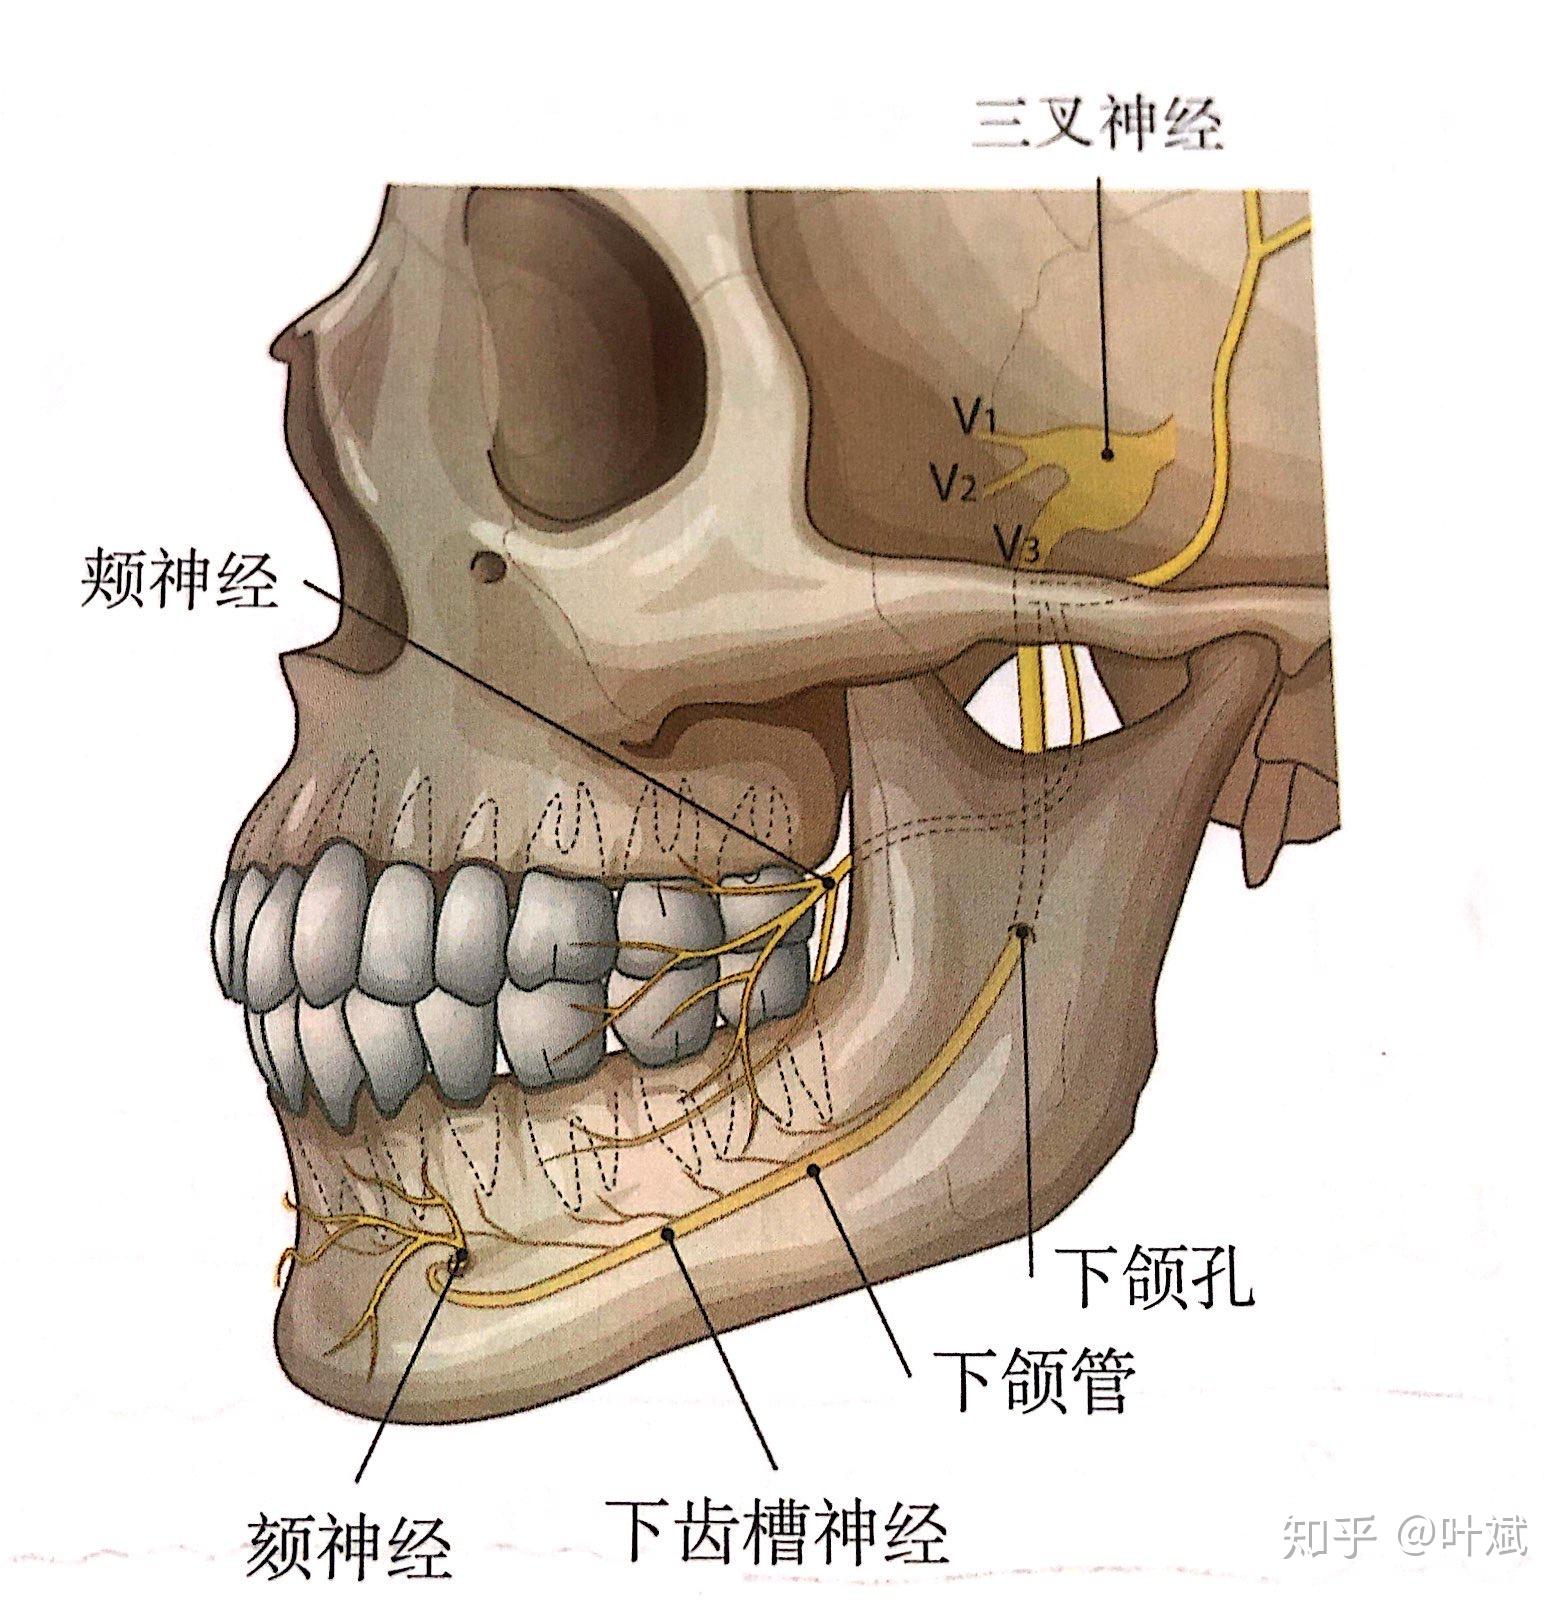 1, 下颌骨缩小手术:下齿槽神经,颏神经,面动脉,面静脉和颌后静脉等